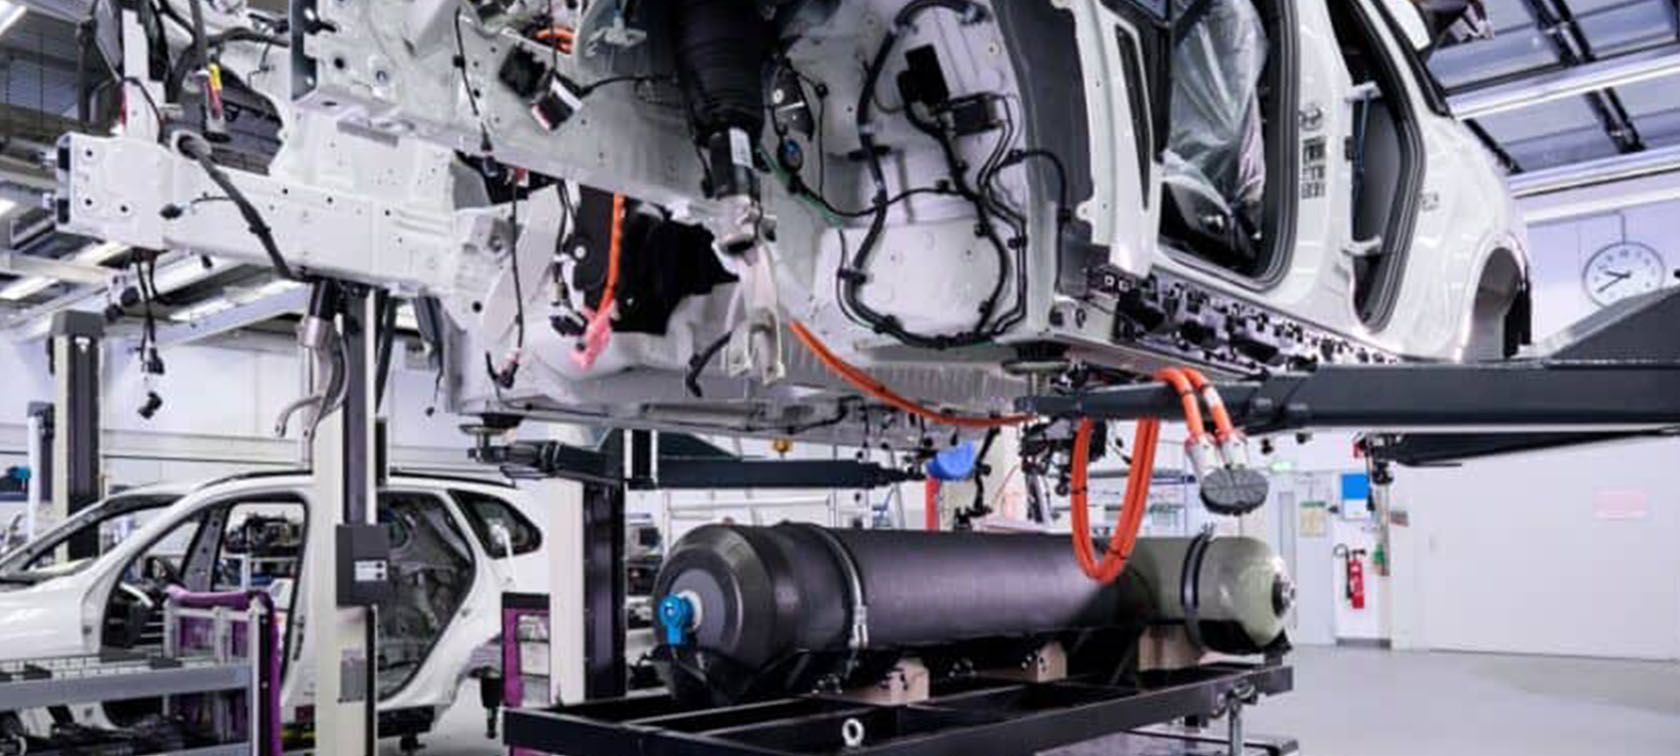 تولید ب ام و iX5 هیدروژنی در آلمان کلید خورد